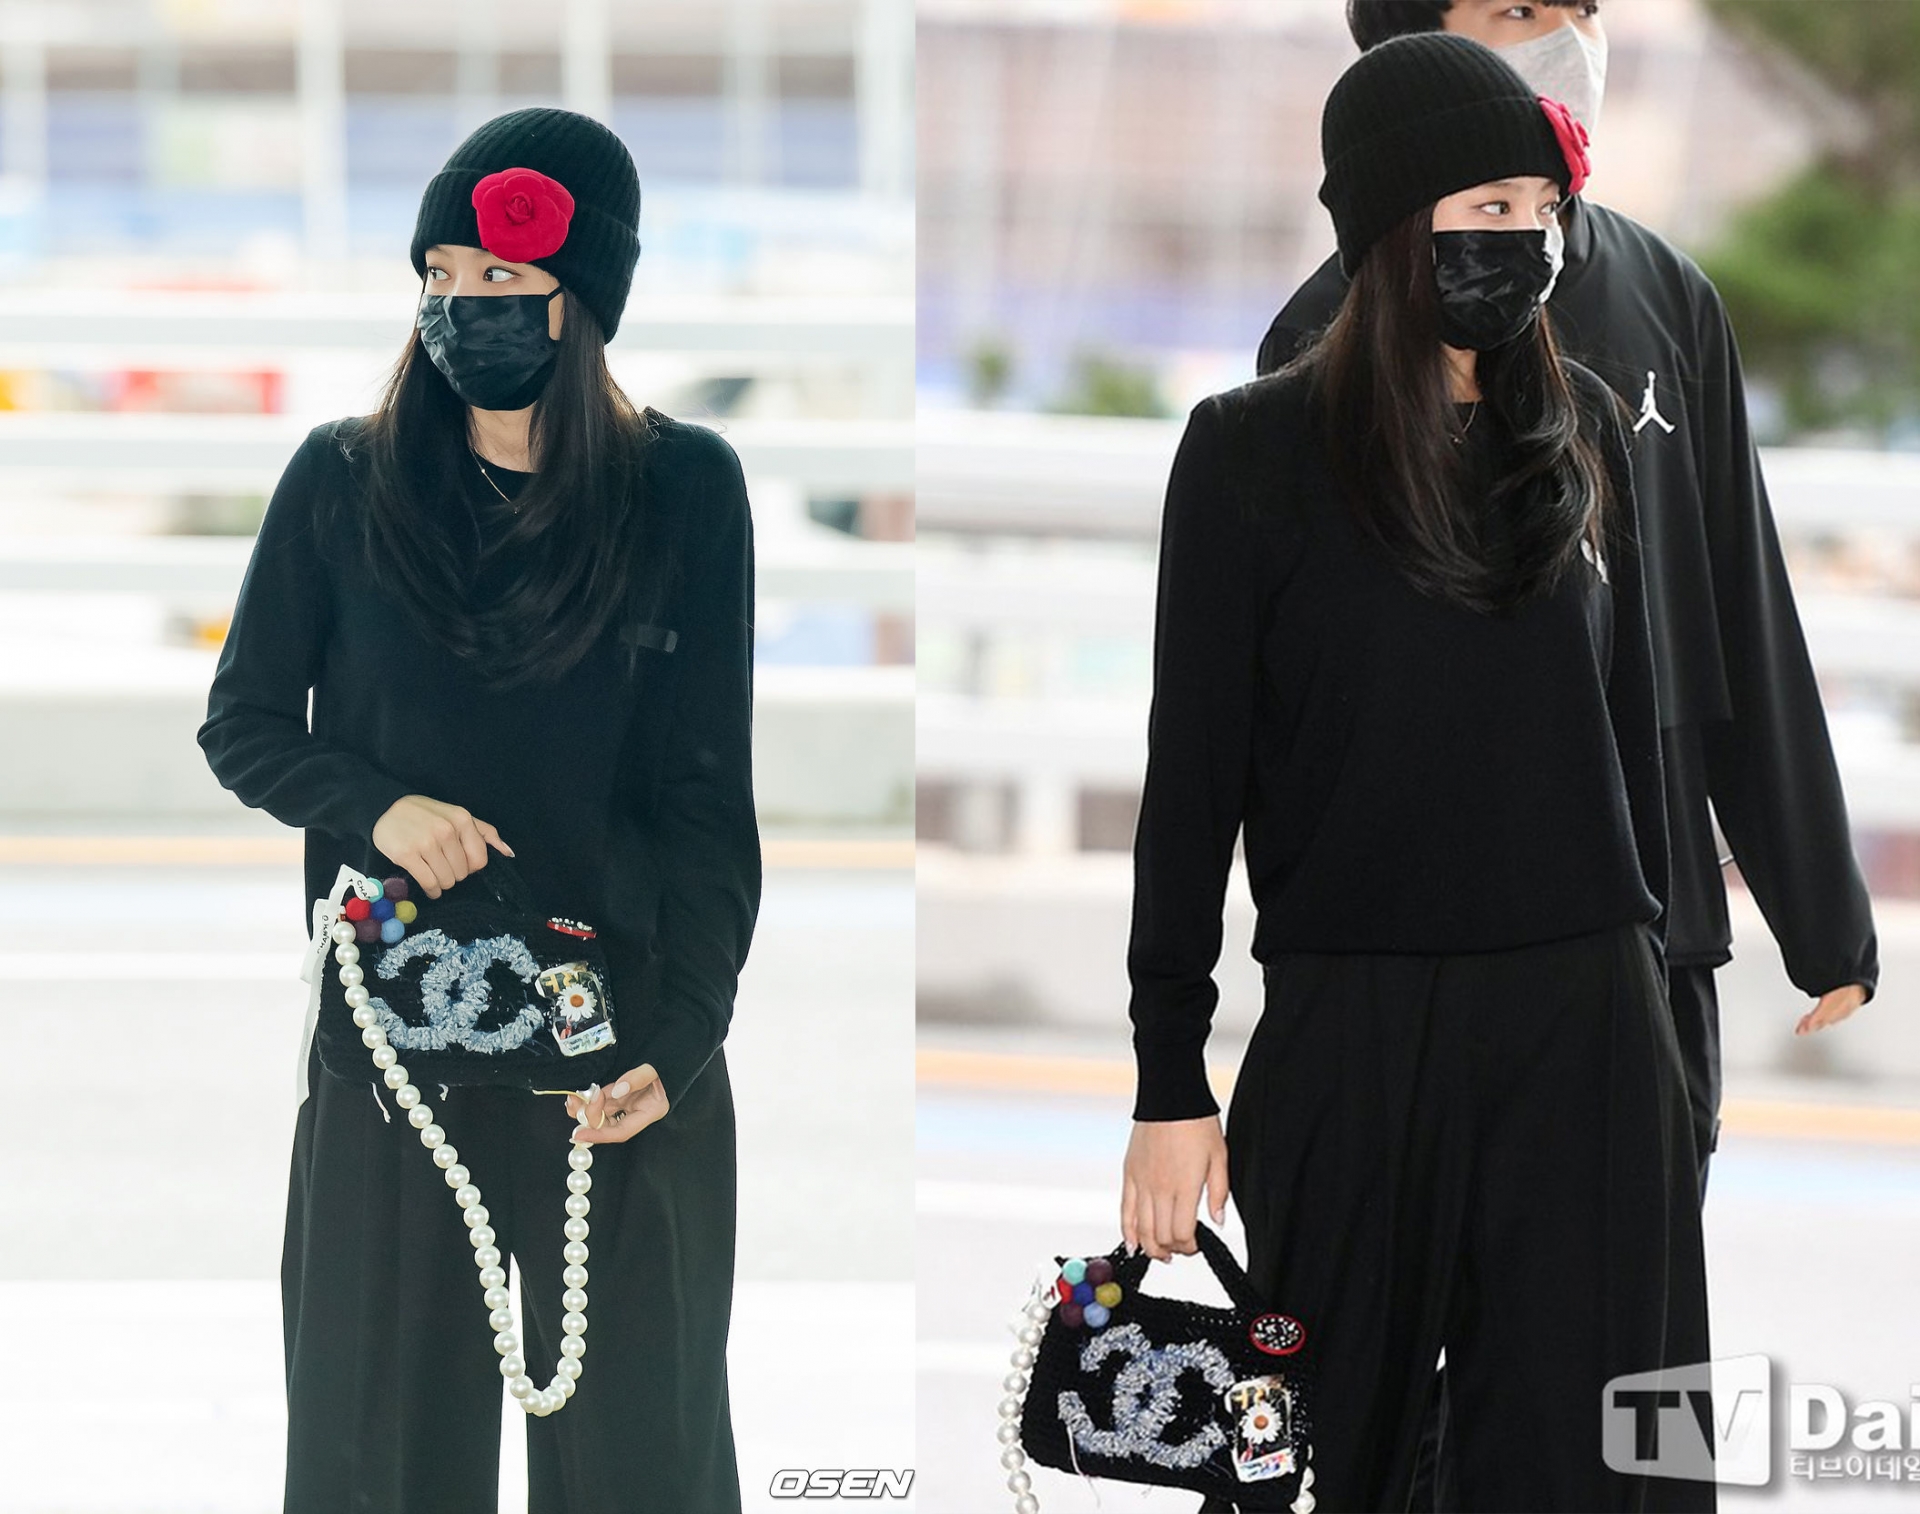 Jennie trùm kín đen như ninja tại sân bay, nhưng có 1 điểm khiến fan từ xa đã nhận ra ngay - Ảnh 1